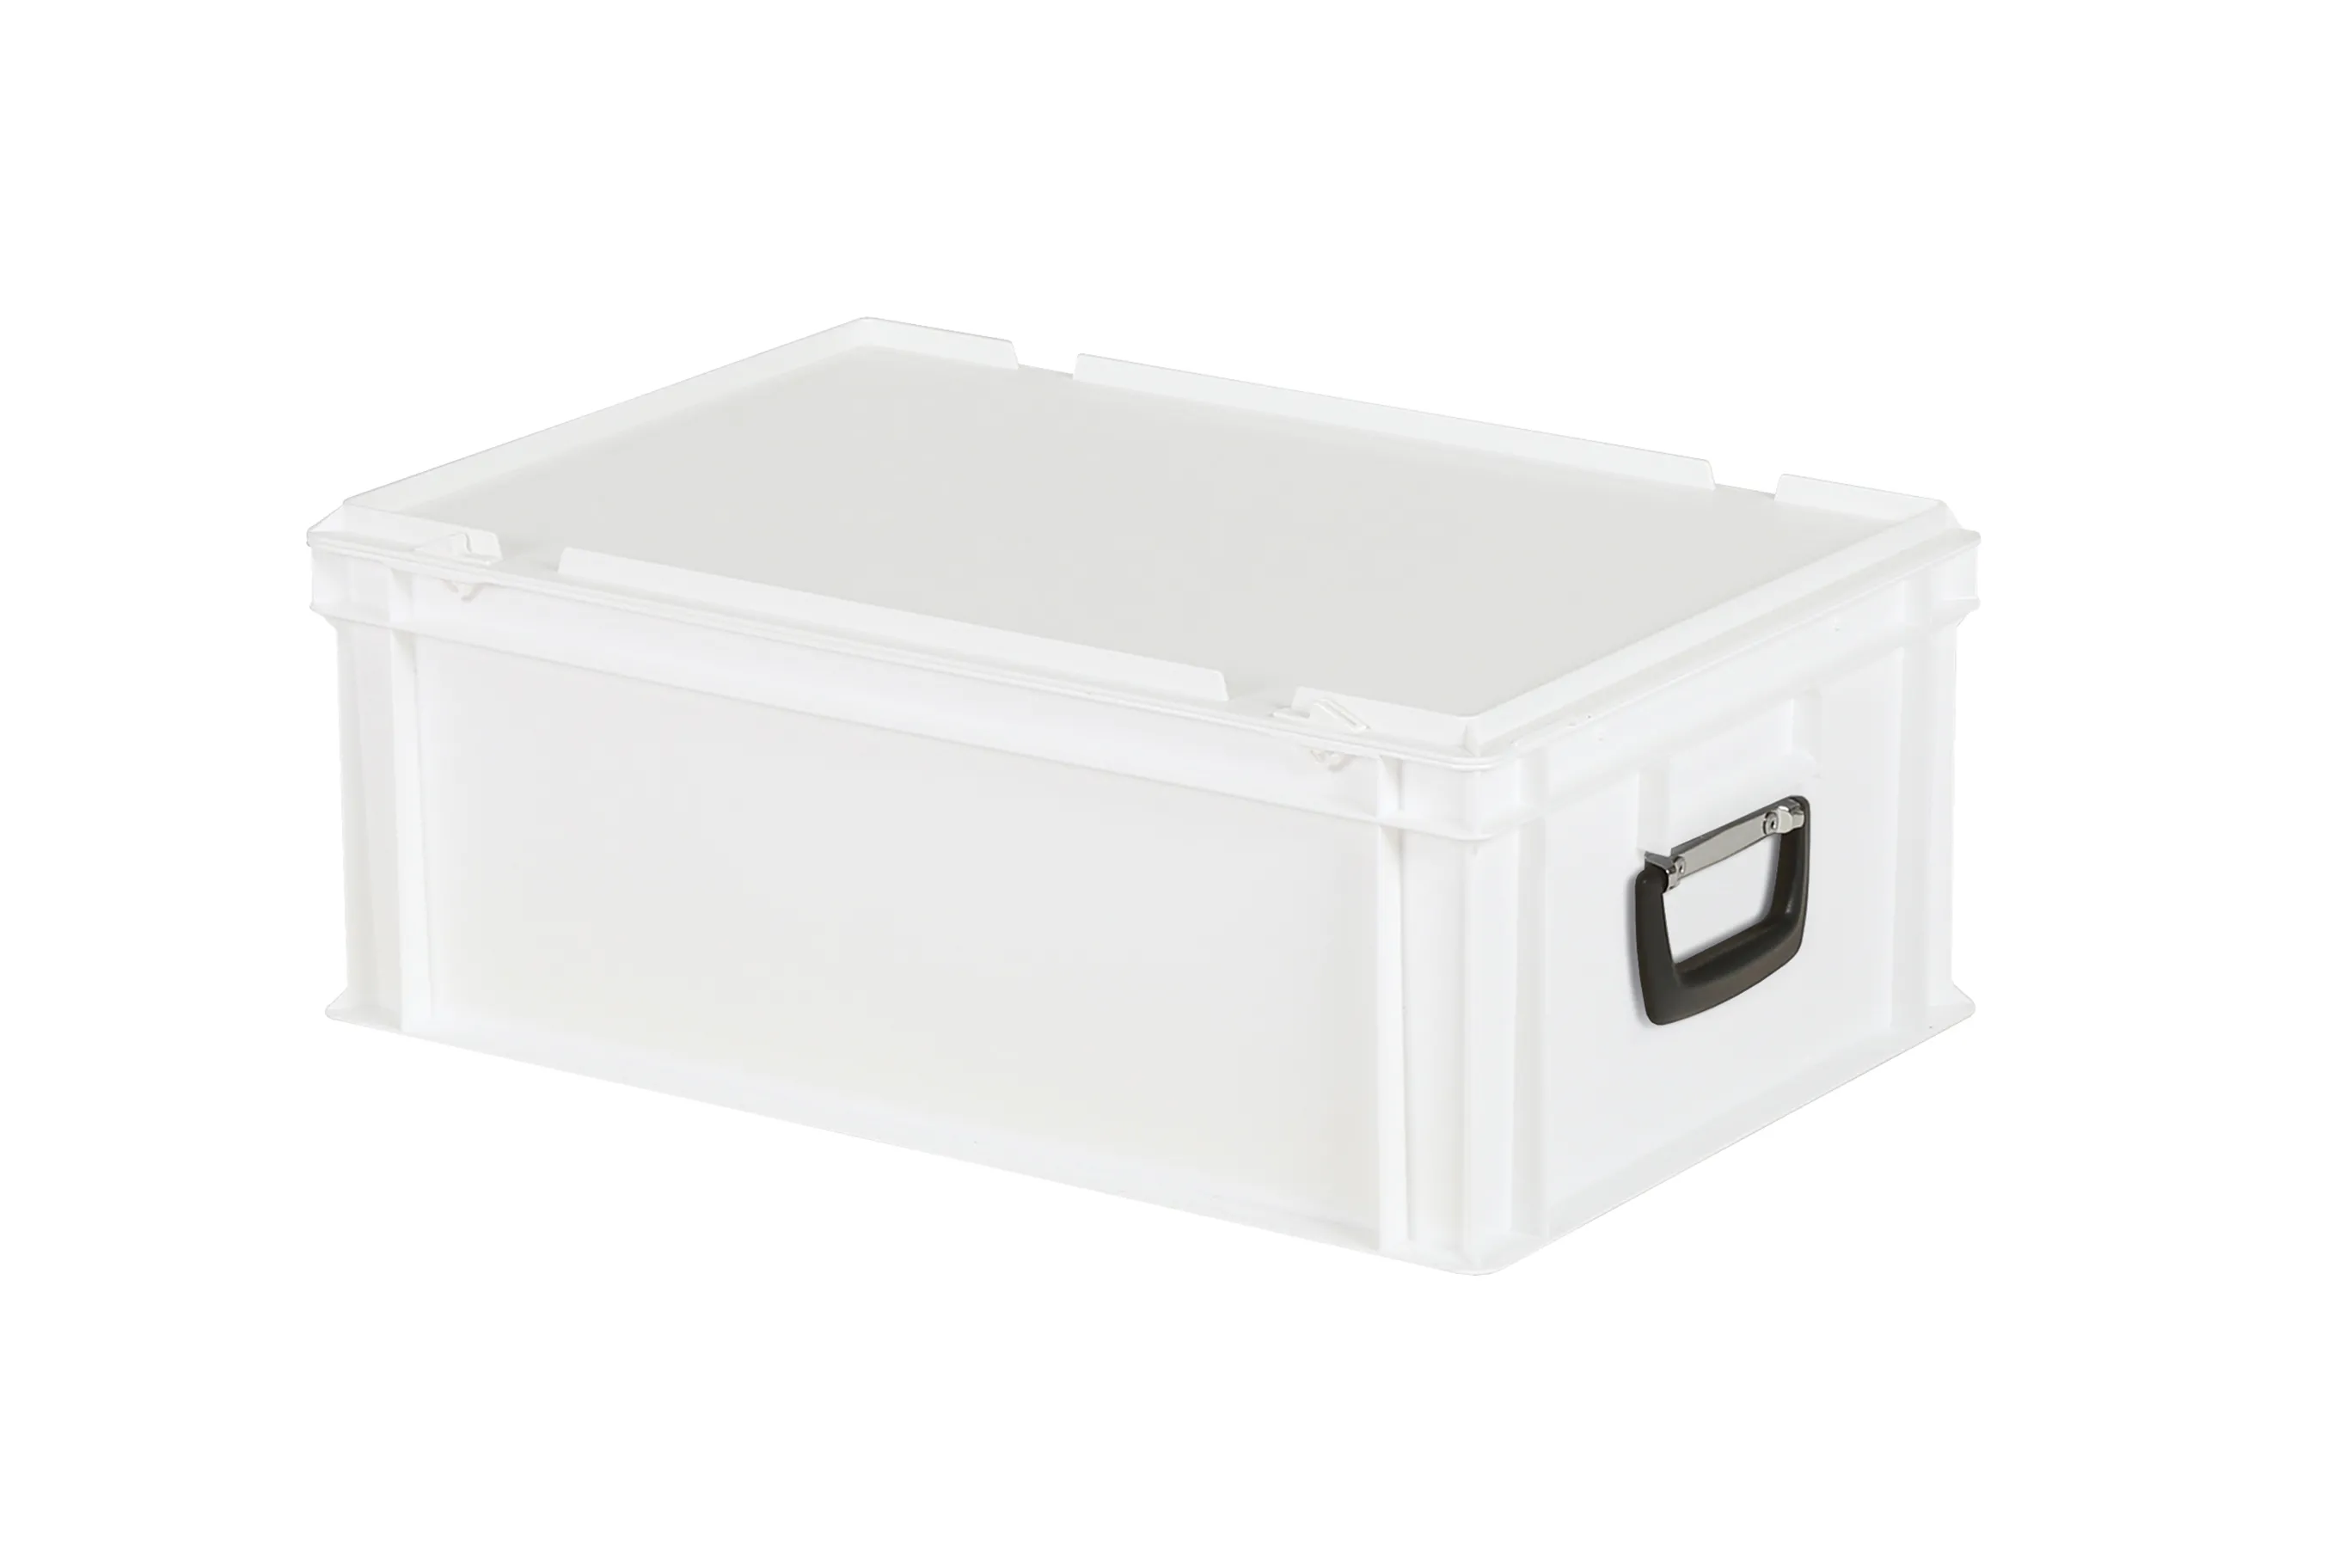 Kunststoffkoffer - 600 x 400 x H 235 mm - Weiß - Behälter mit Deckel und Griff